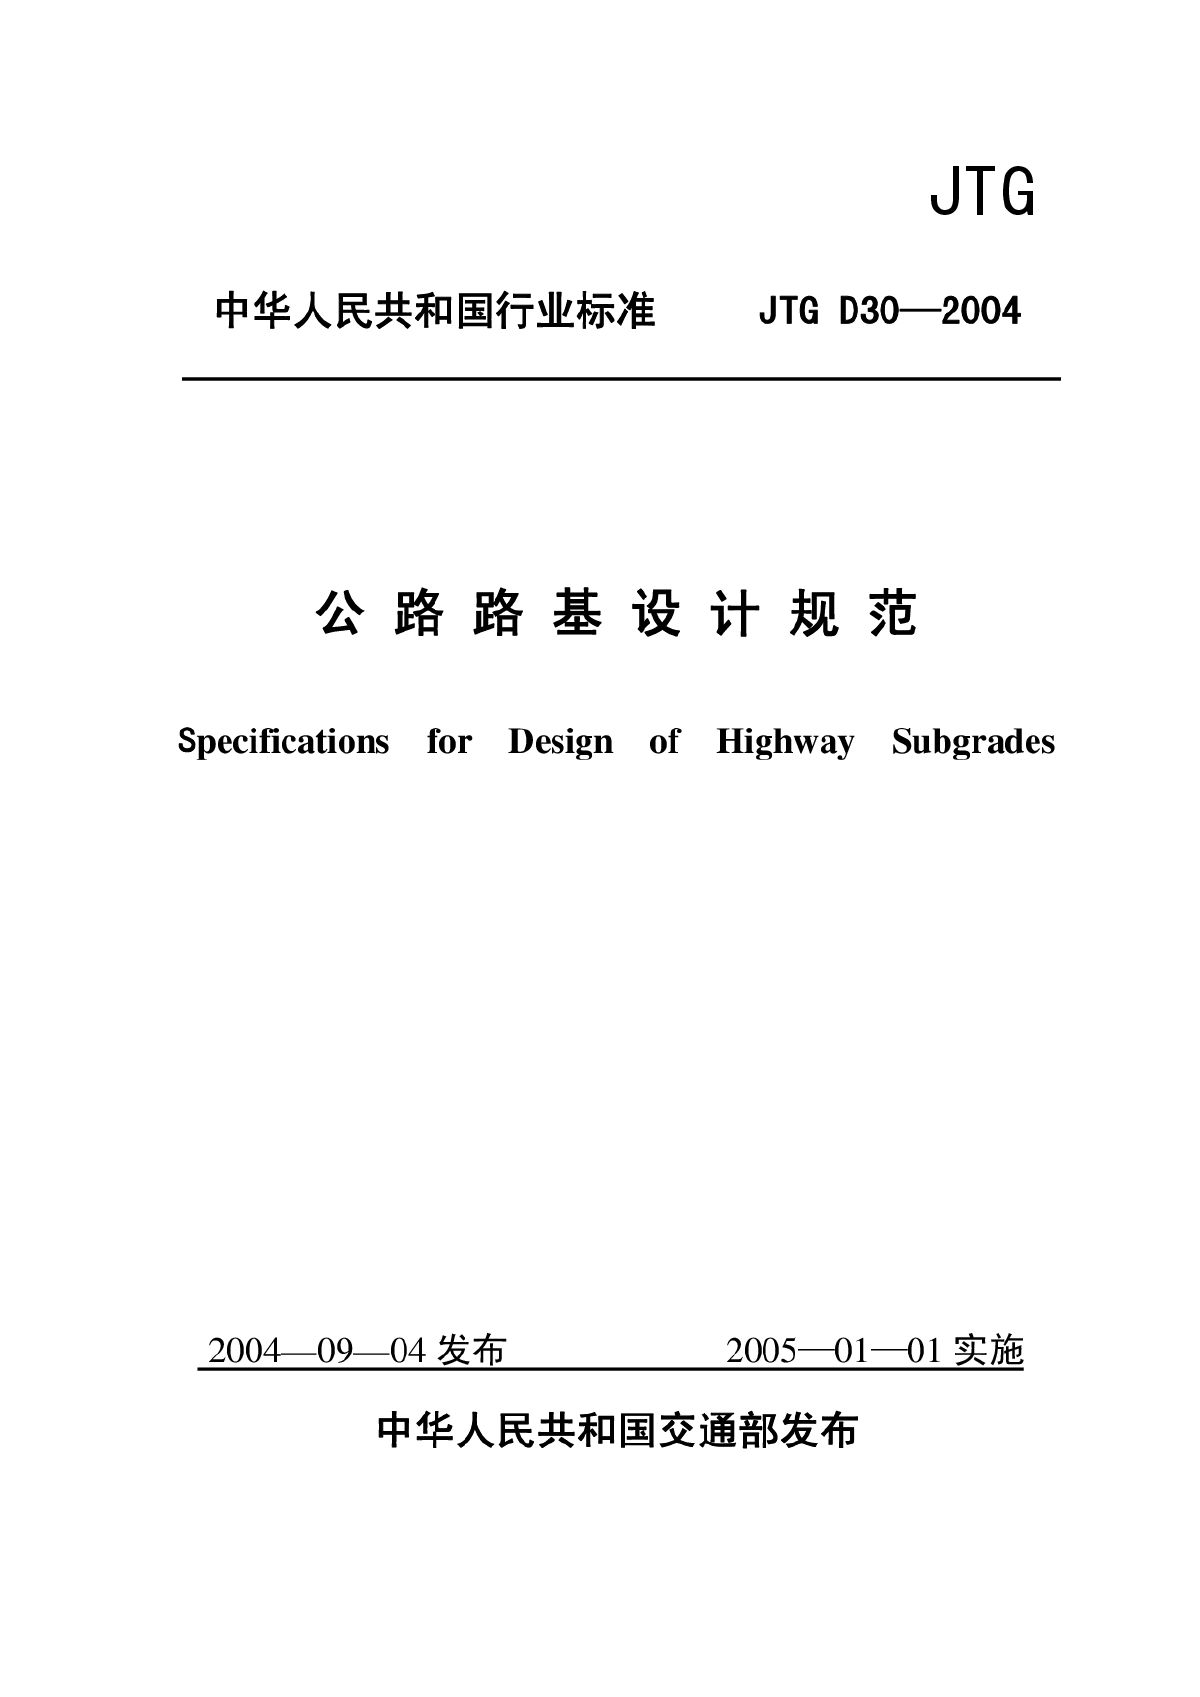 JTG D30-2004 公路路基设计规范(2015-05-01作废)